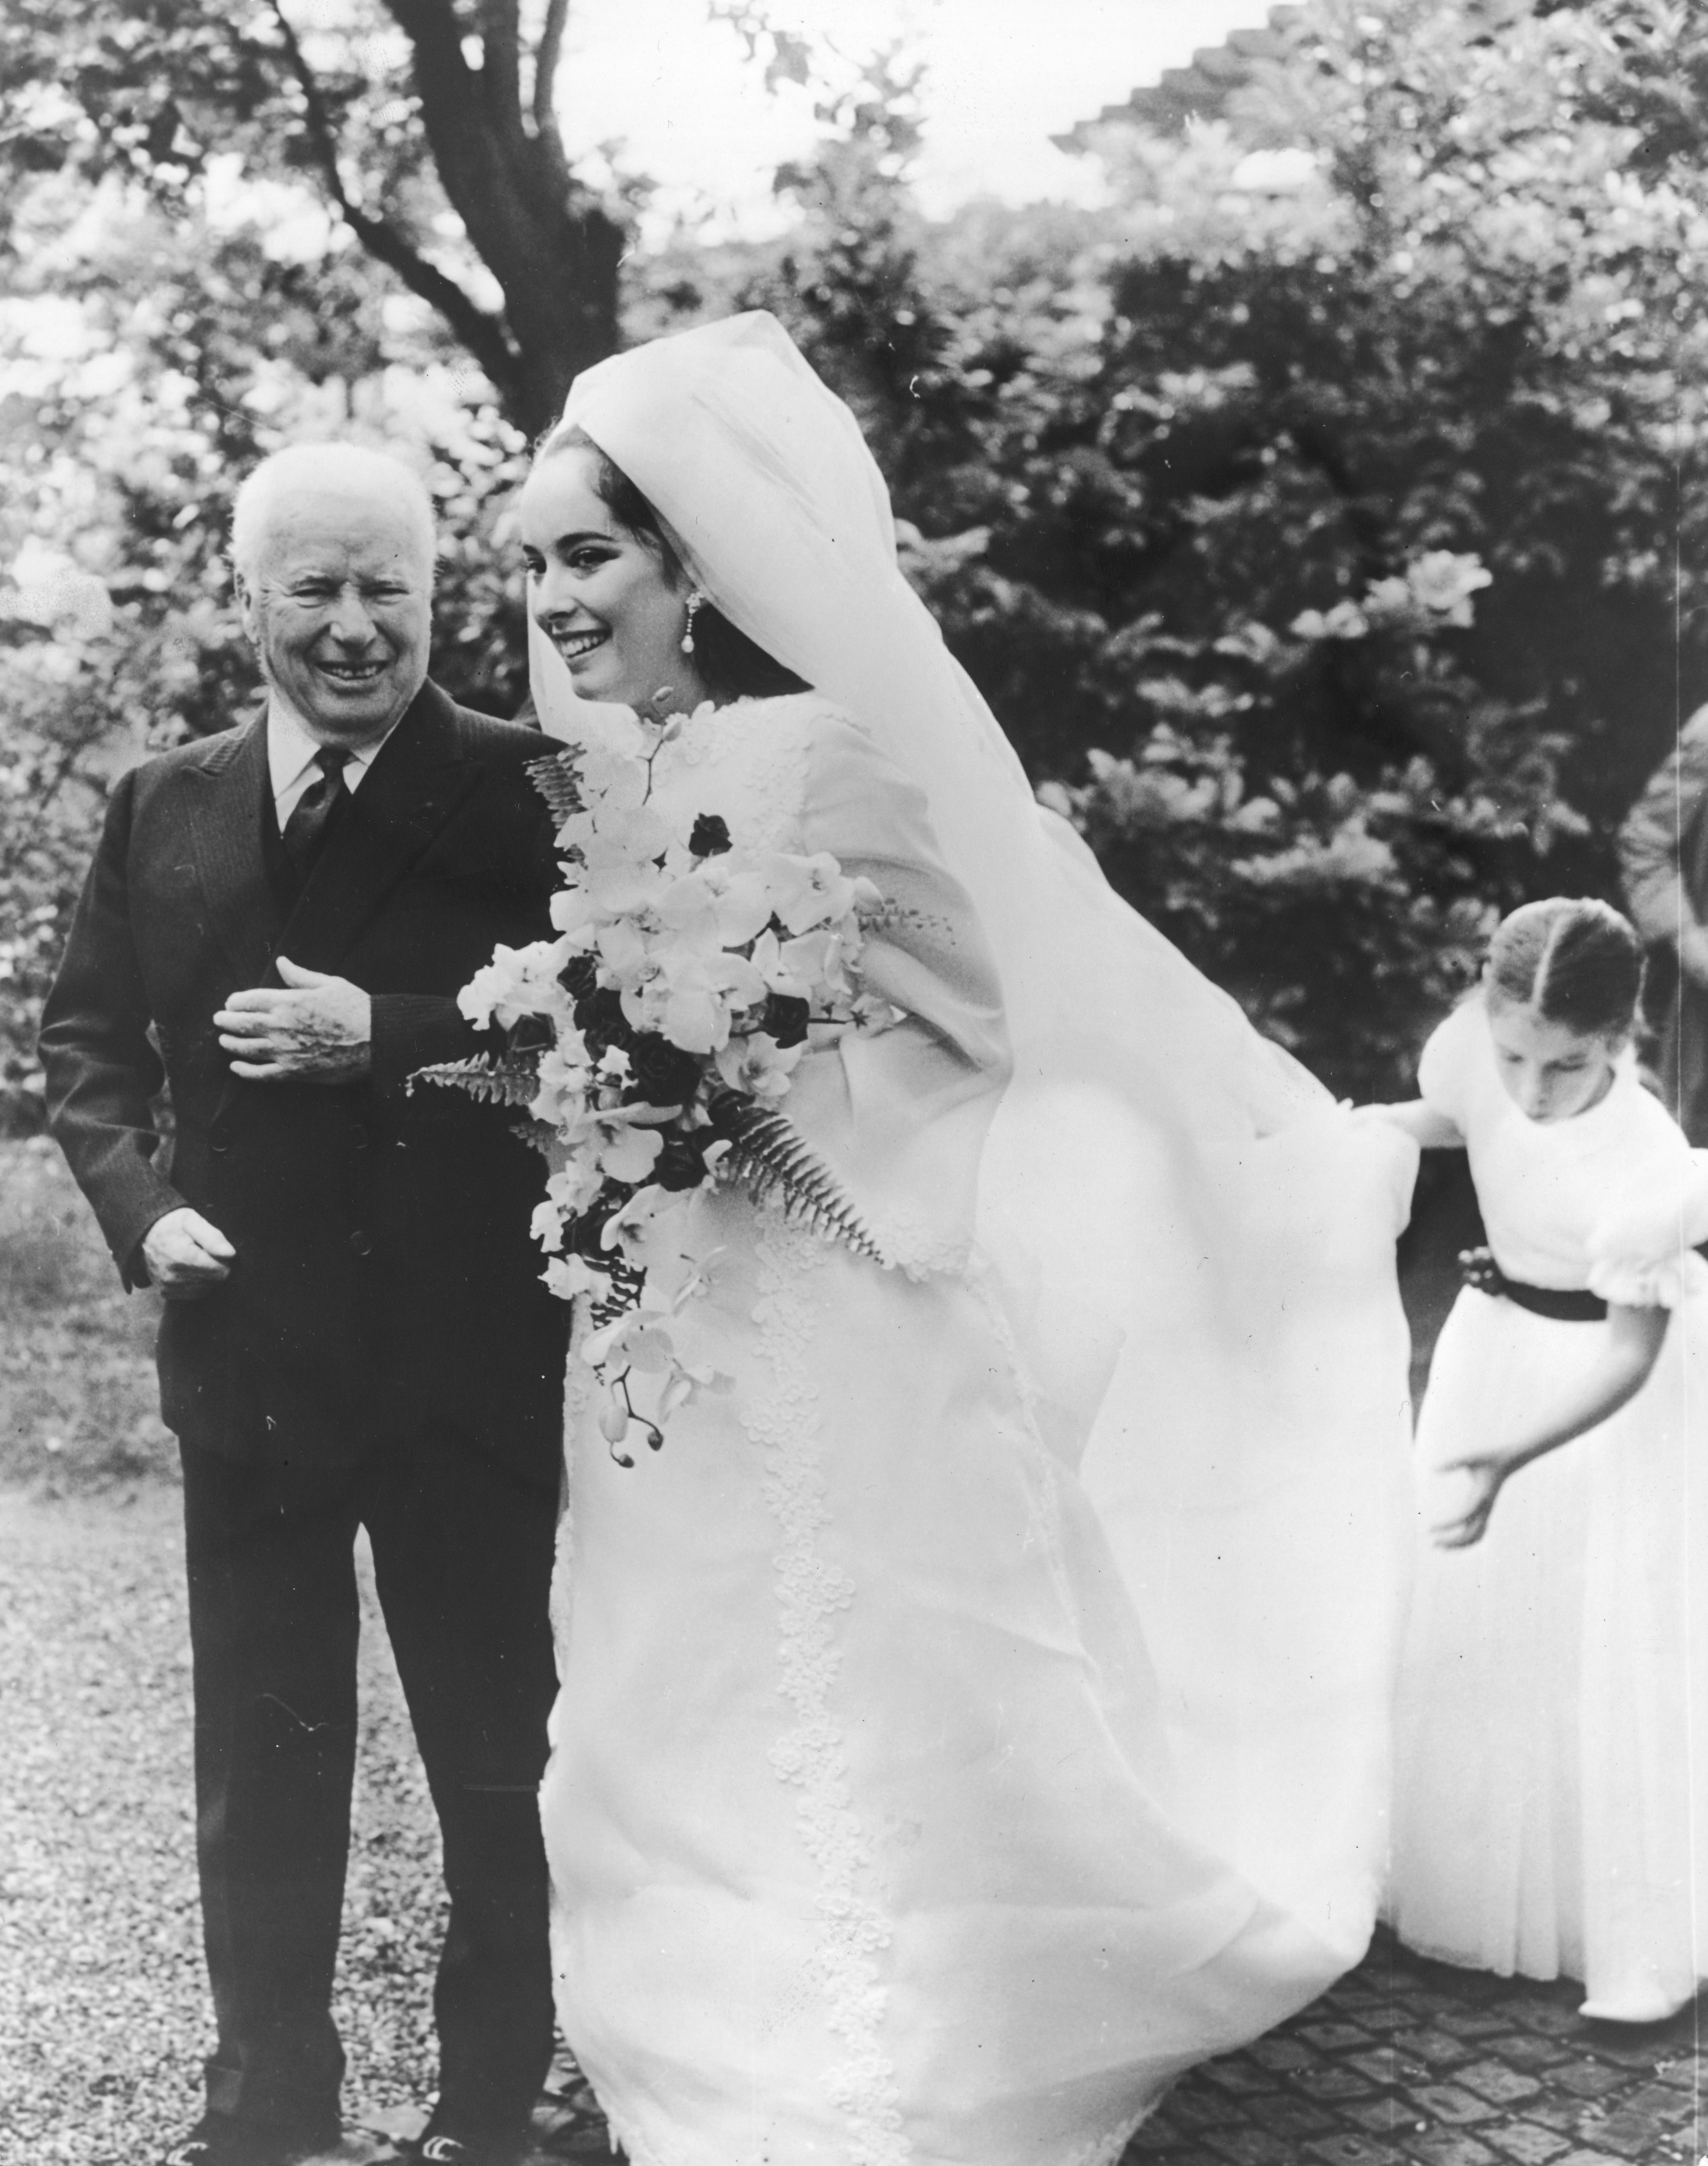 Charlie Chaplin's daughter got married.